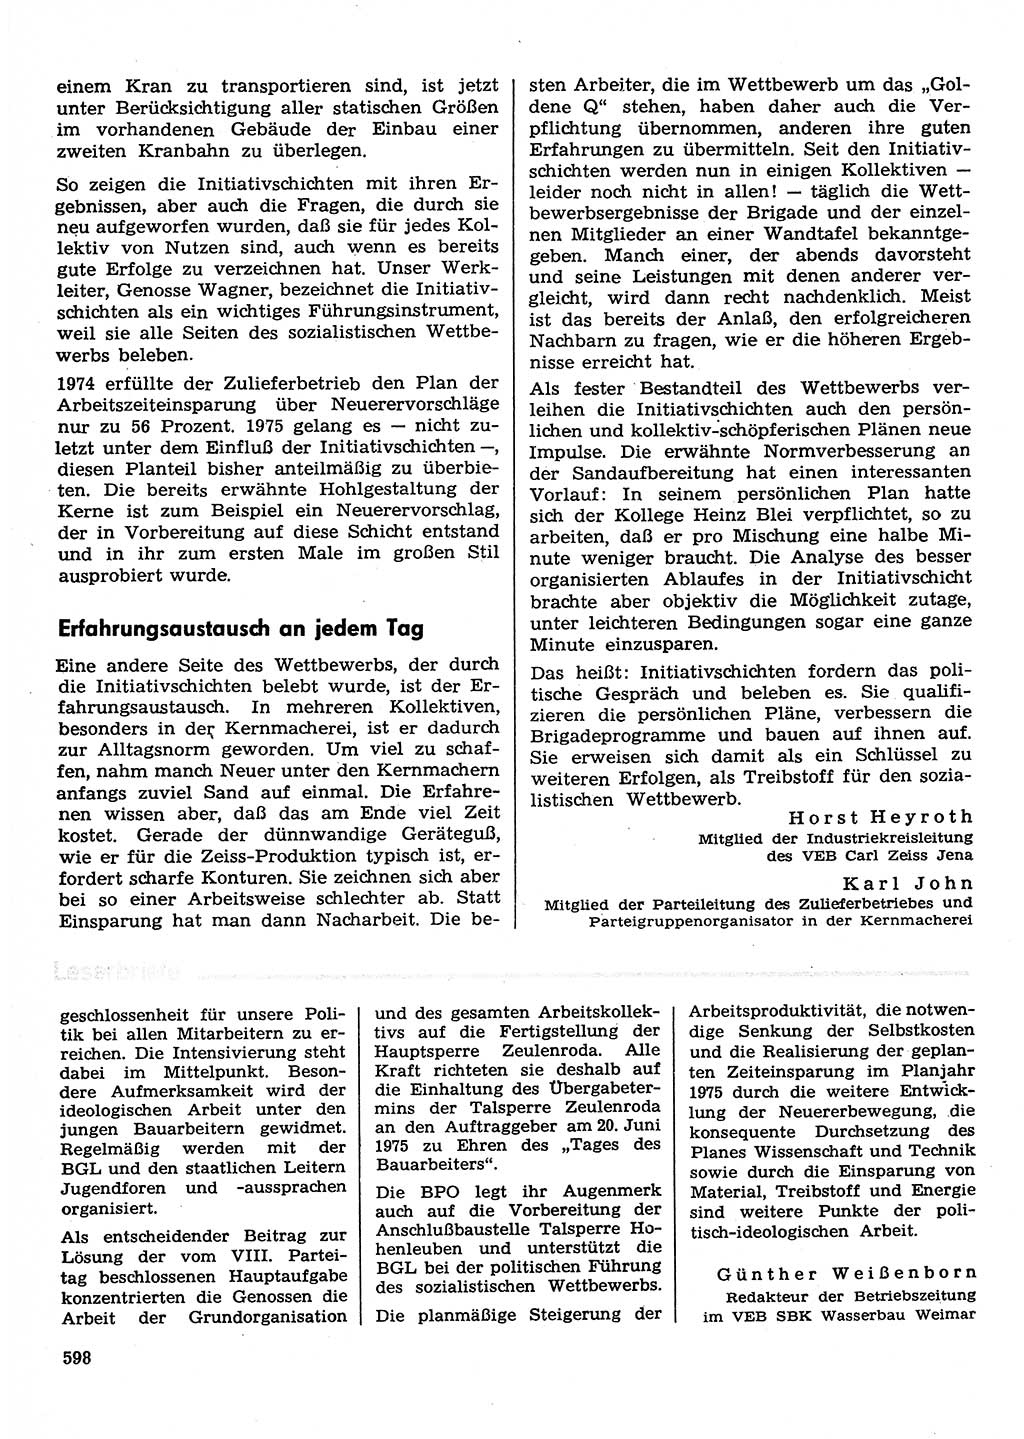 Neuer Weg (NW), Organ des Zentralkomitees (ZK) der SED (Sozialistische Einheitspartei Deutschlands) für Fragen des Parteilebens, 30. Jahrgang [Deutsche Demokratische Republik (DDR)] 1975, Seite 598 (NW ZK SED DDR 1975, S. 598)